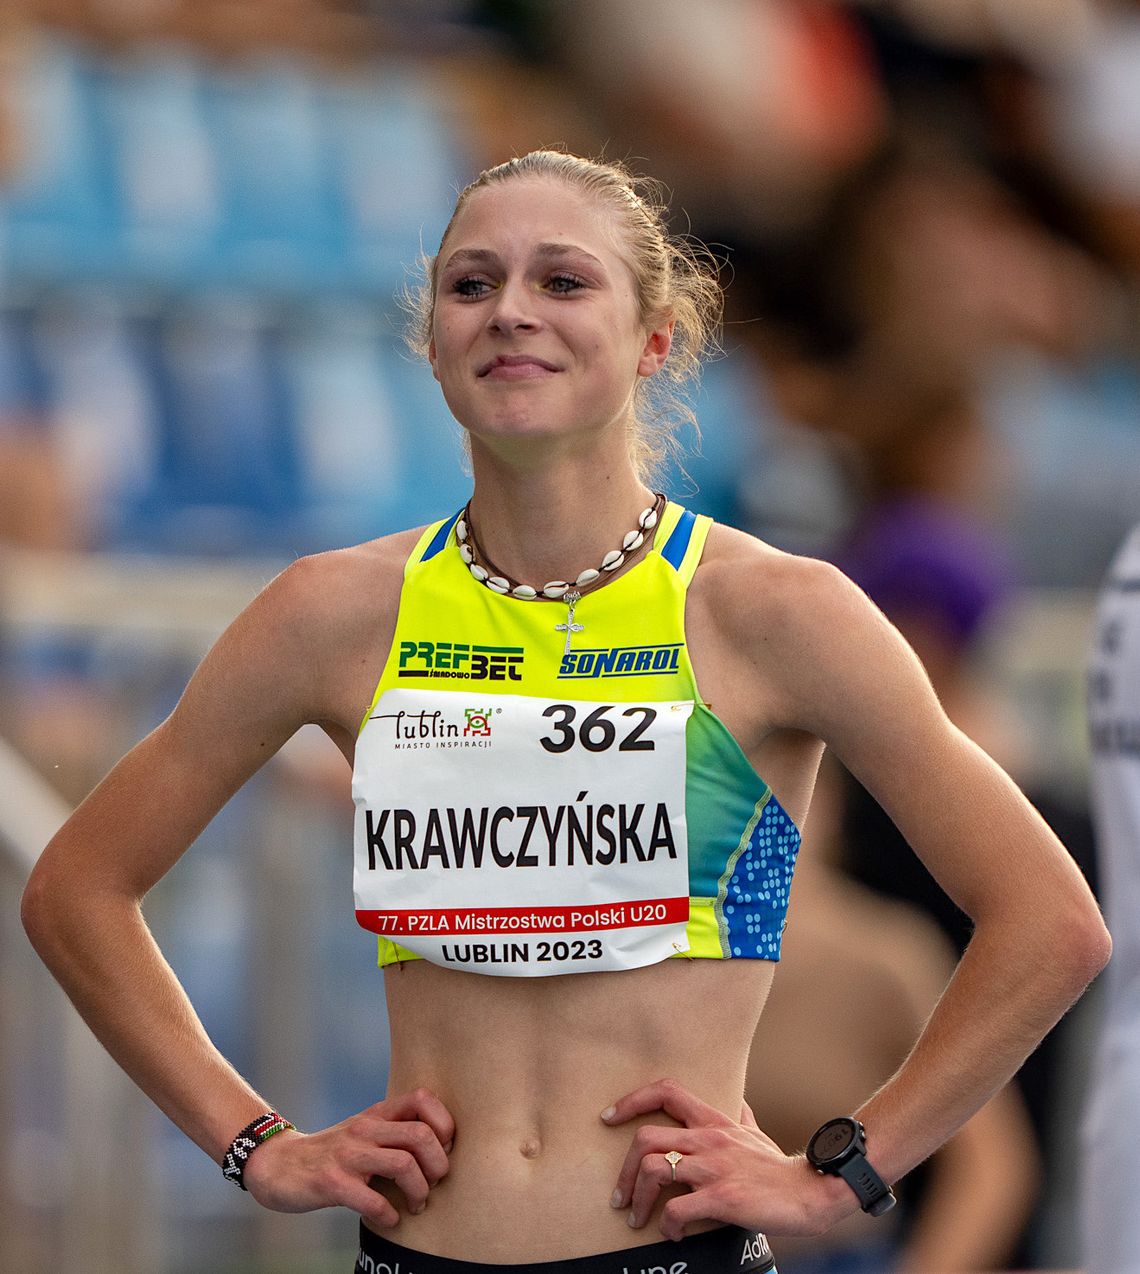 Martyna Krawczyńska poprawia kolejny rekord Polski [FOTO]